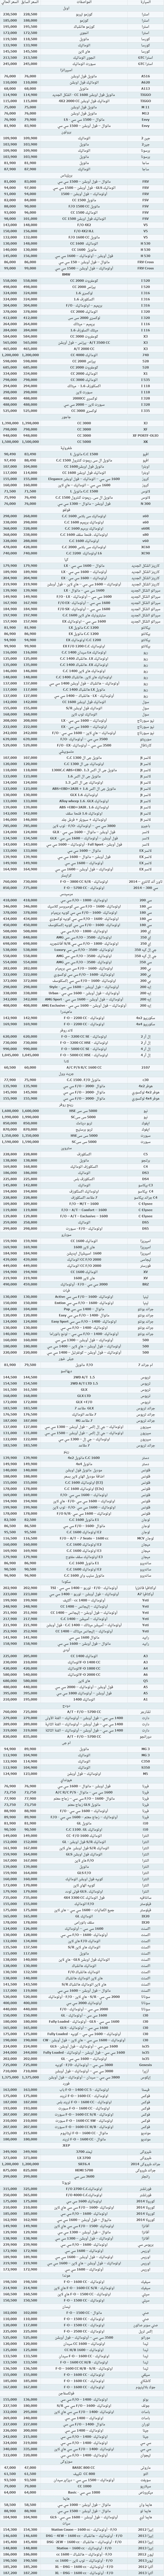 قائمة باسعار جميع انواع السيارات في السوق المصرية 2014